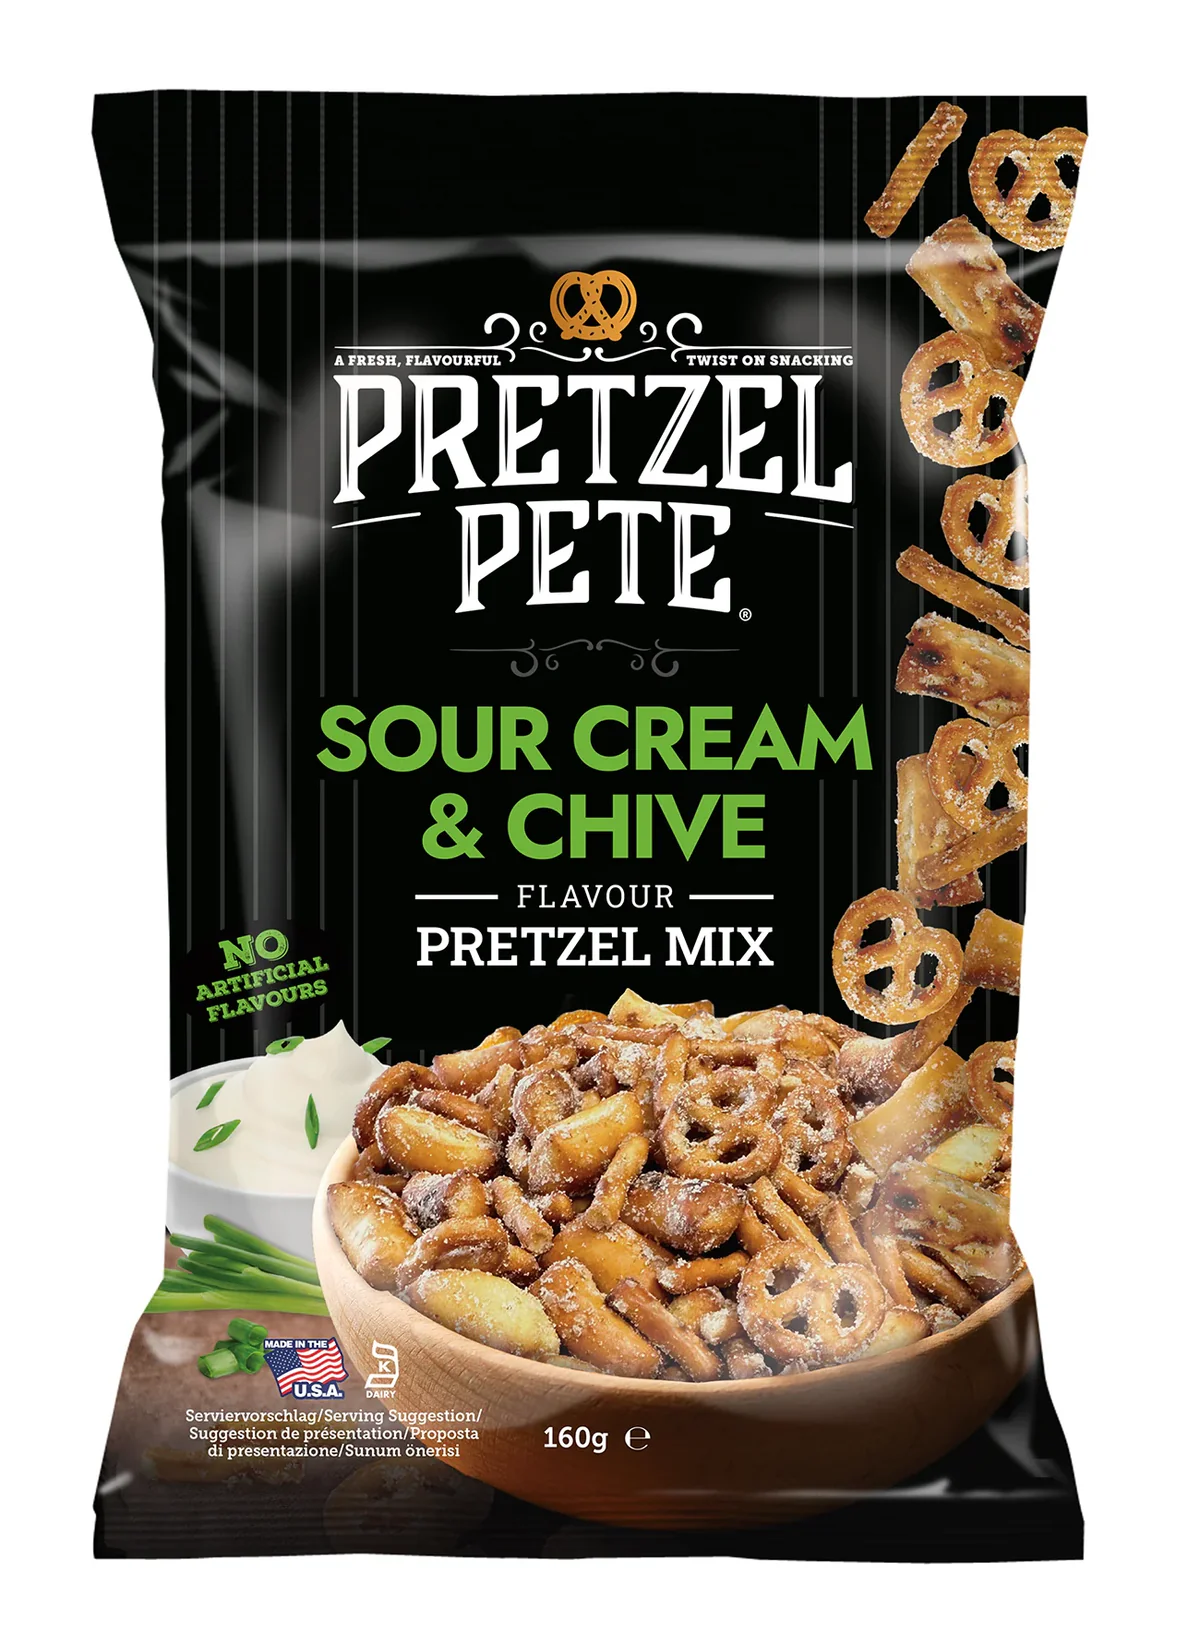 Pretzel Pete Sour Cream & Chive Flavour Pretzel Mix 160g*